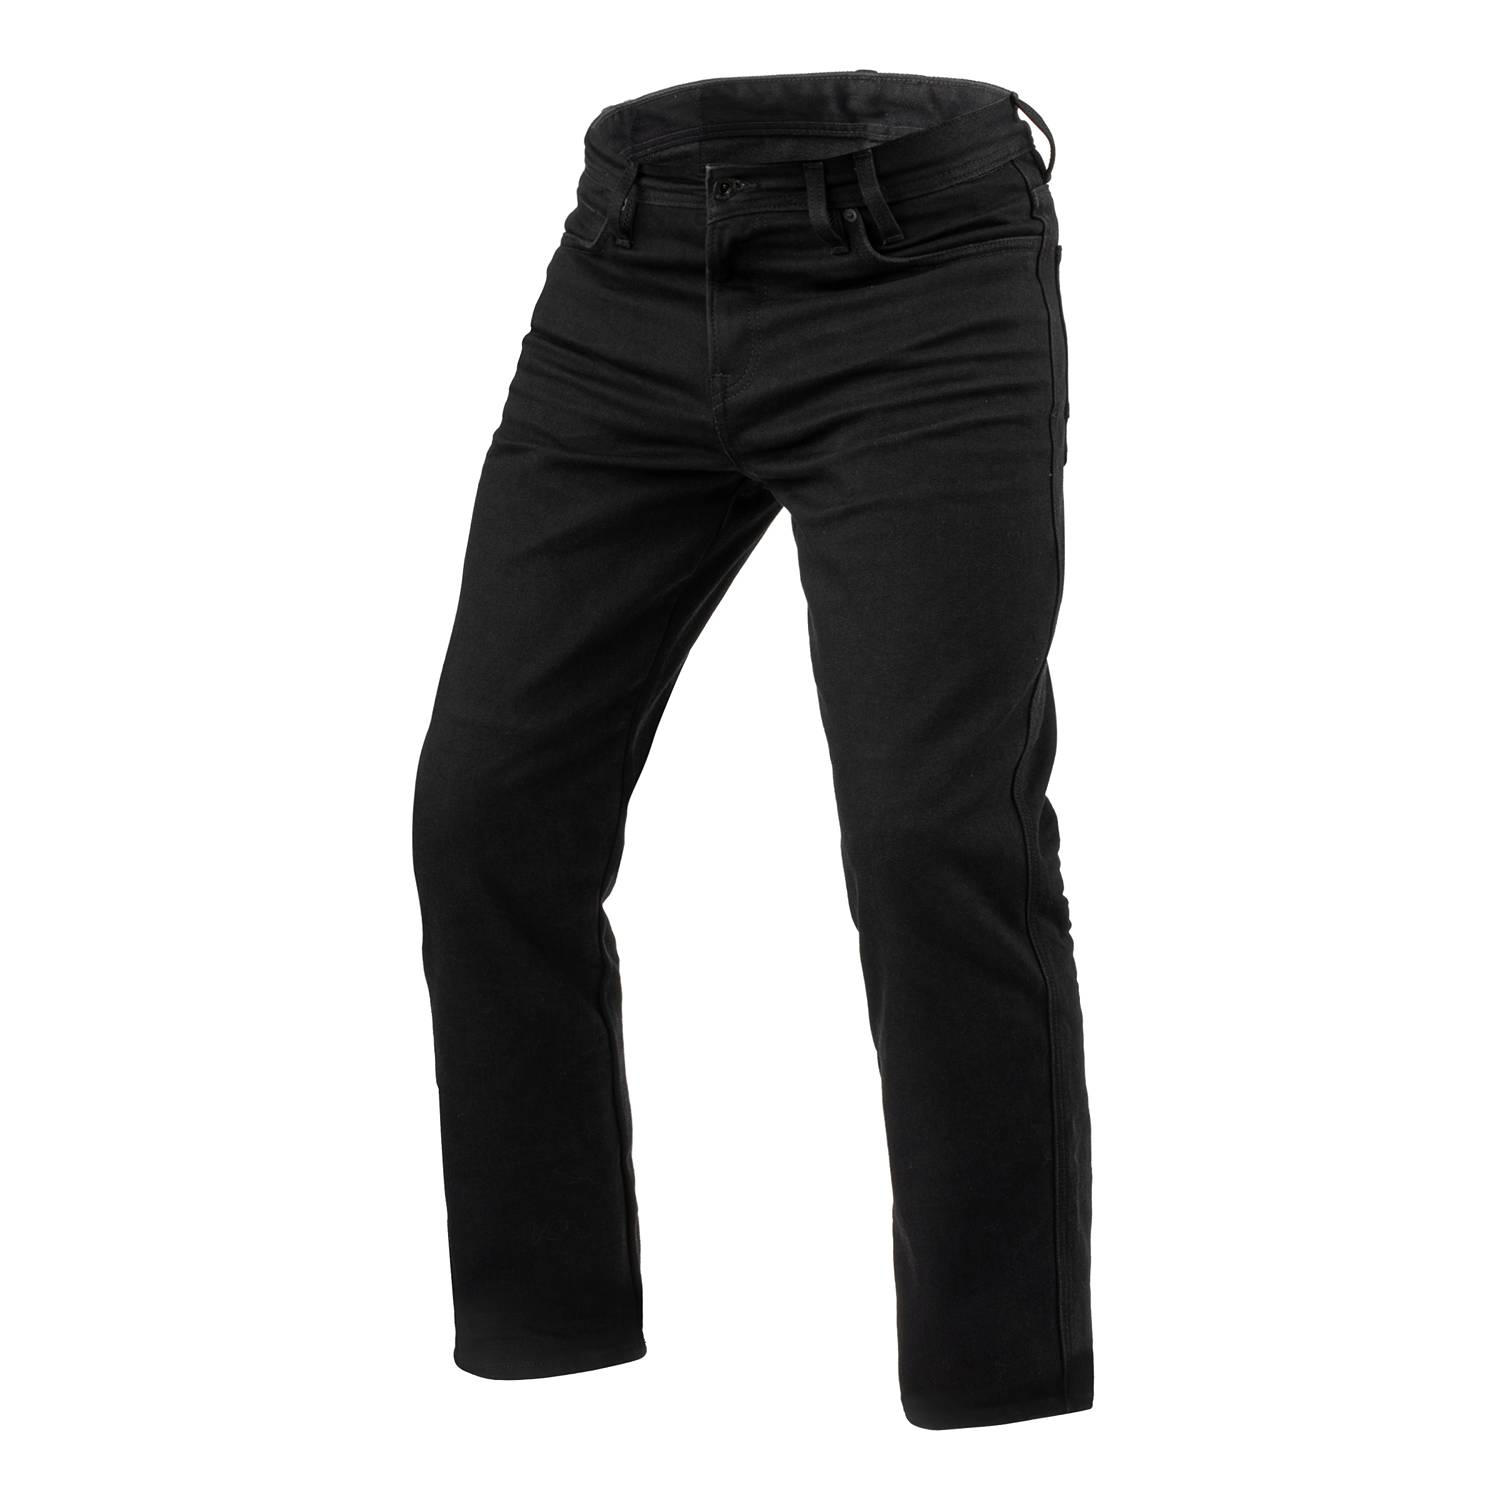 Image of REV'IT! Jeans Lombard 3 RF Black L32 Motorcycle Jeans Size L32/W31 EN